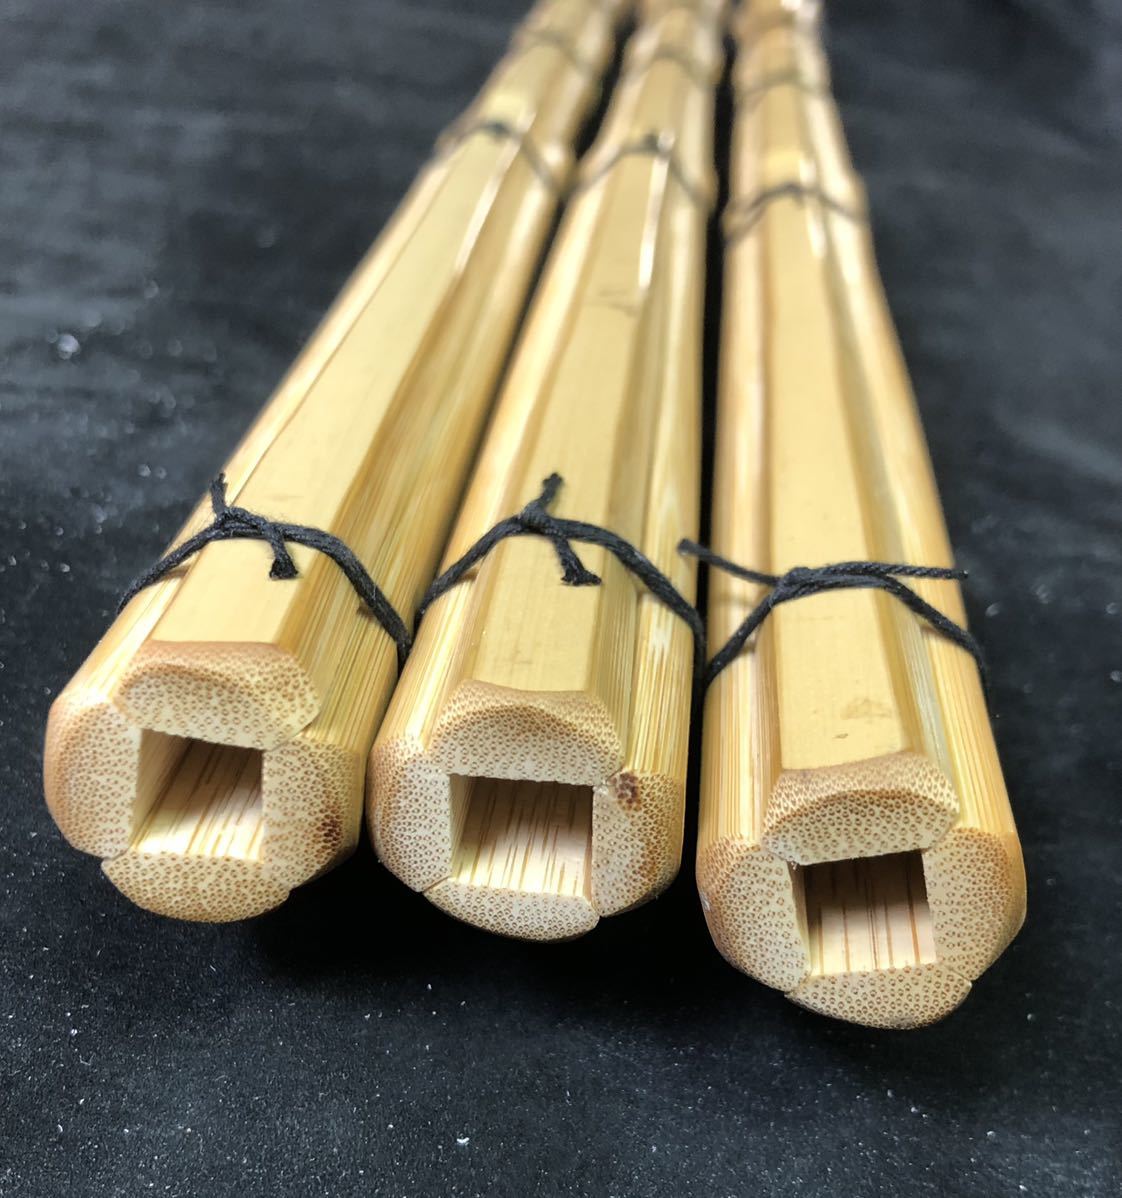 [ новый товар ] kendo бамбуковый меч высококлассный подлинный бамбук туловище . рисунок futoshi type рисунок 28mm 3 шт. комплект 